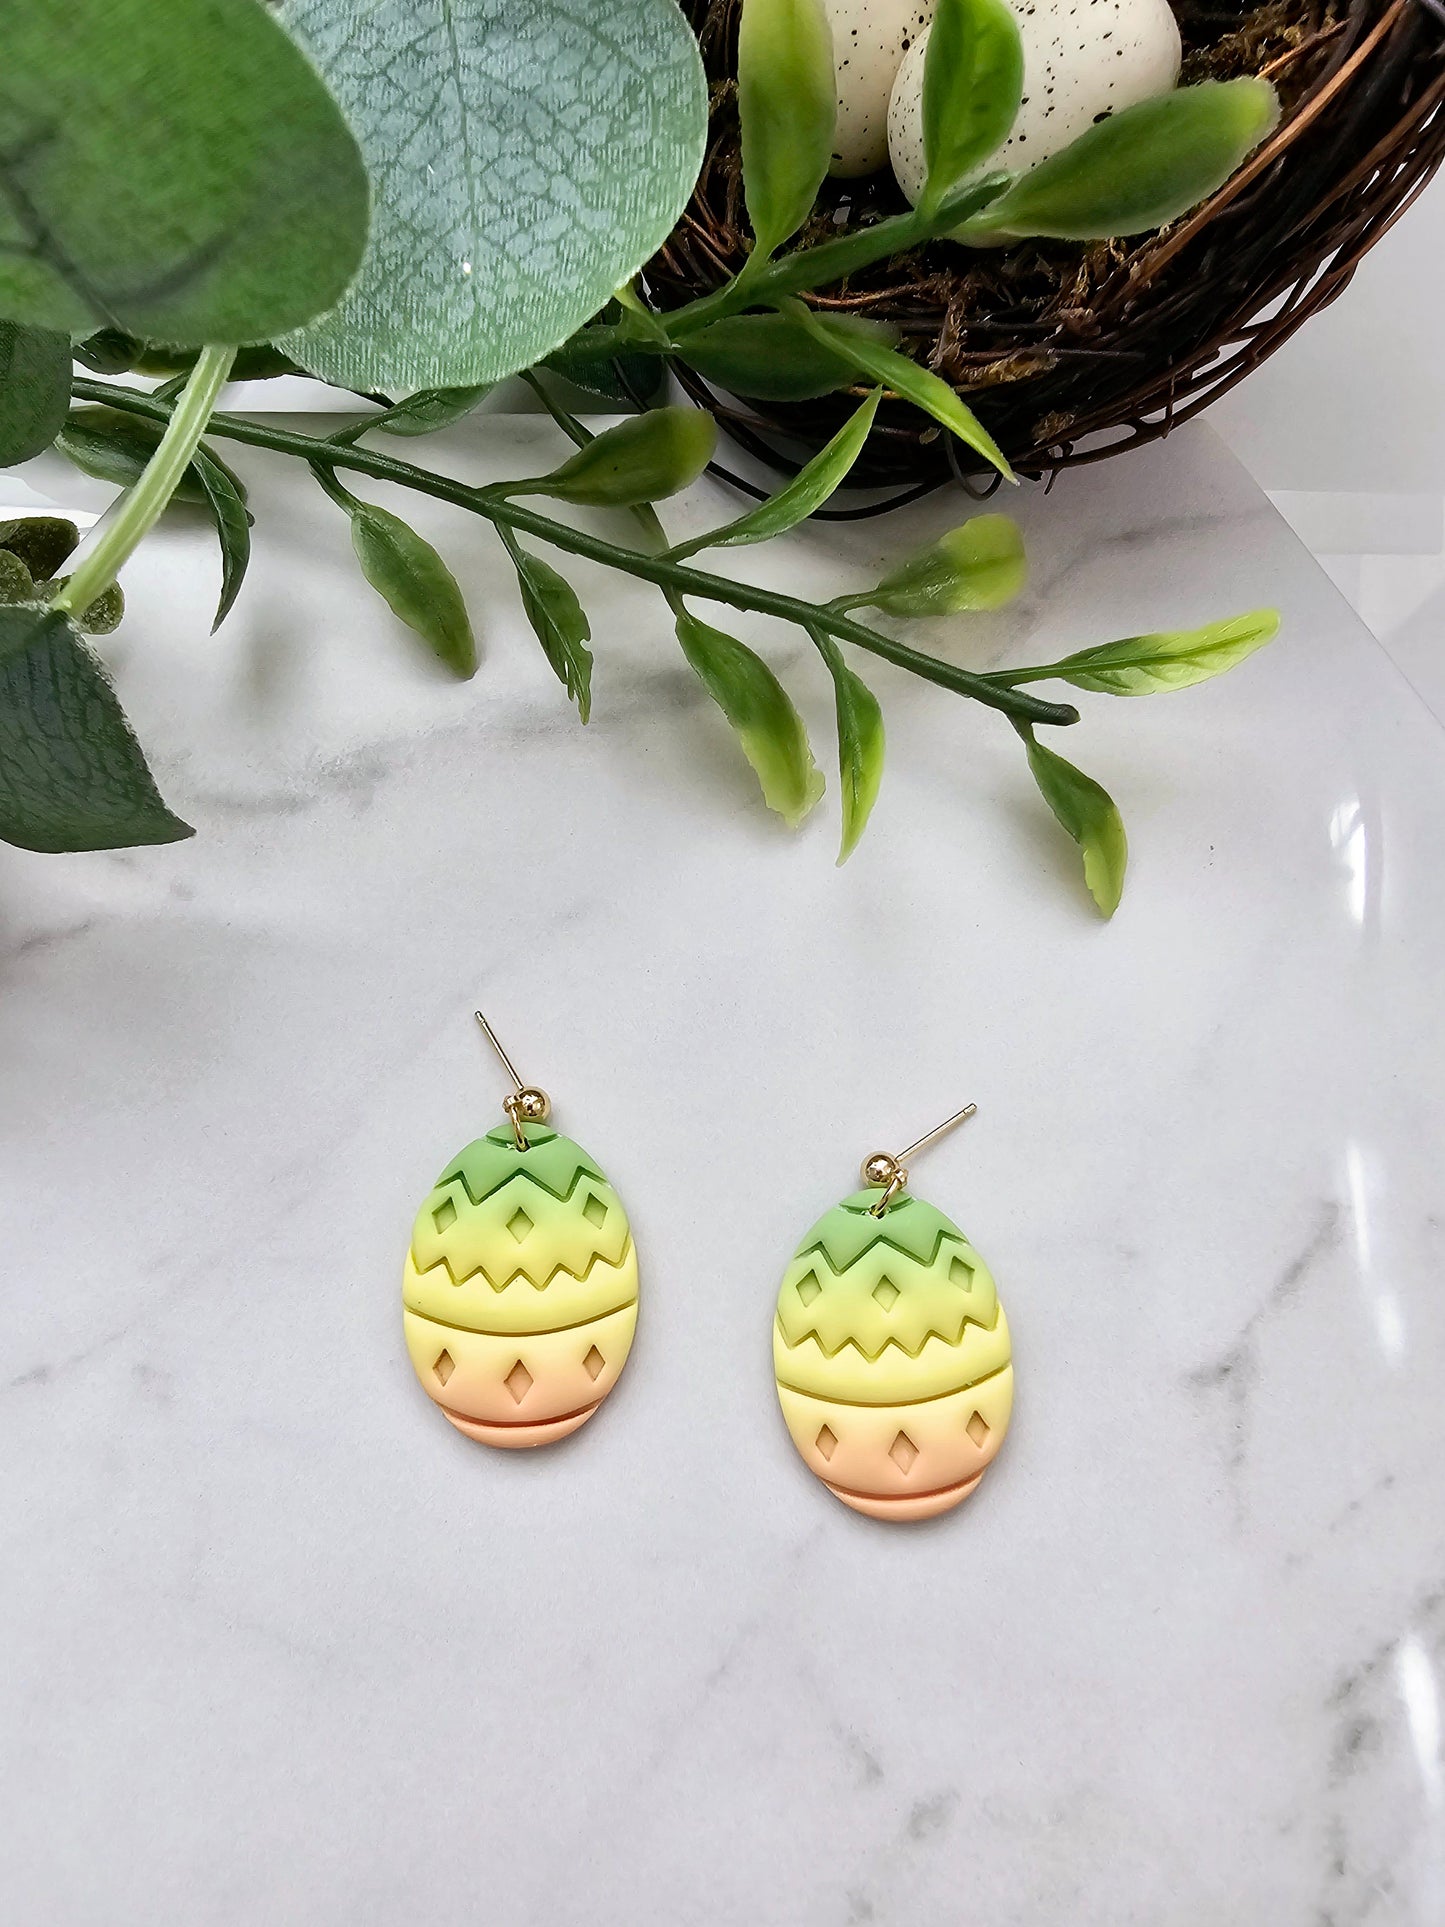 Colorful easter egg earrings